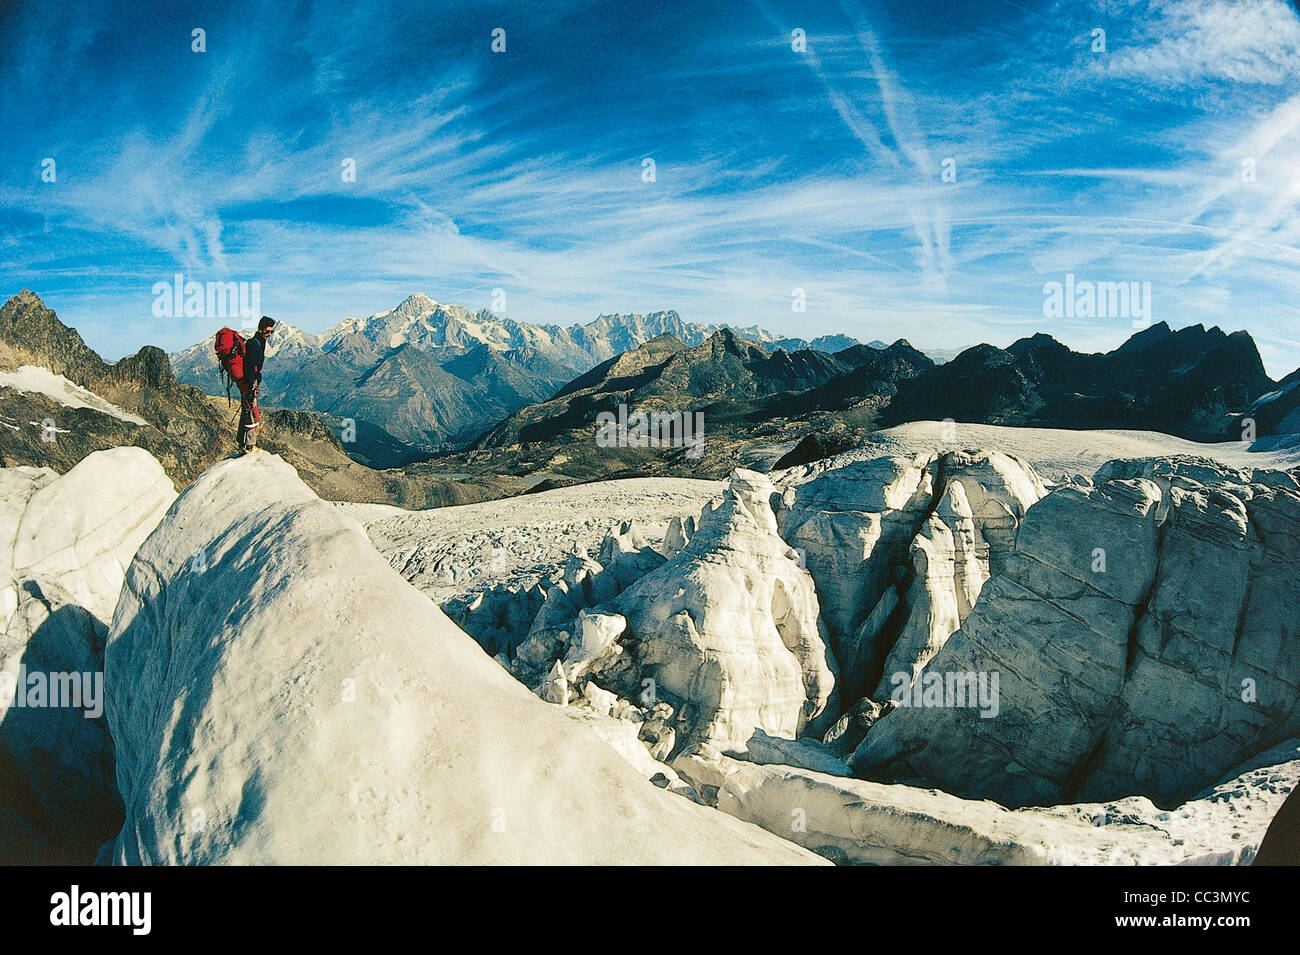 El perfil lateral de una persona en la cima de una roca, Glaciar Rutor, La Thuile, Región del Valle de Aosta, Italia Foto de stock